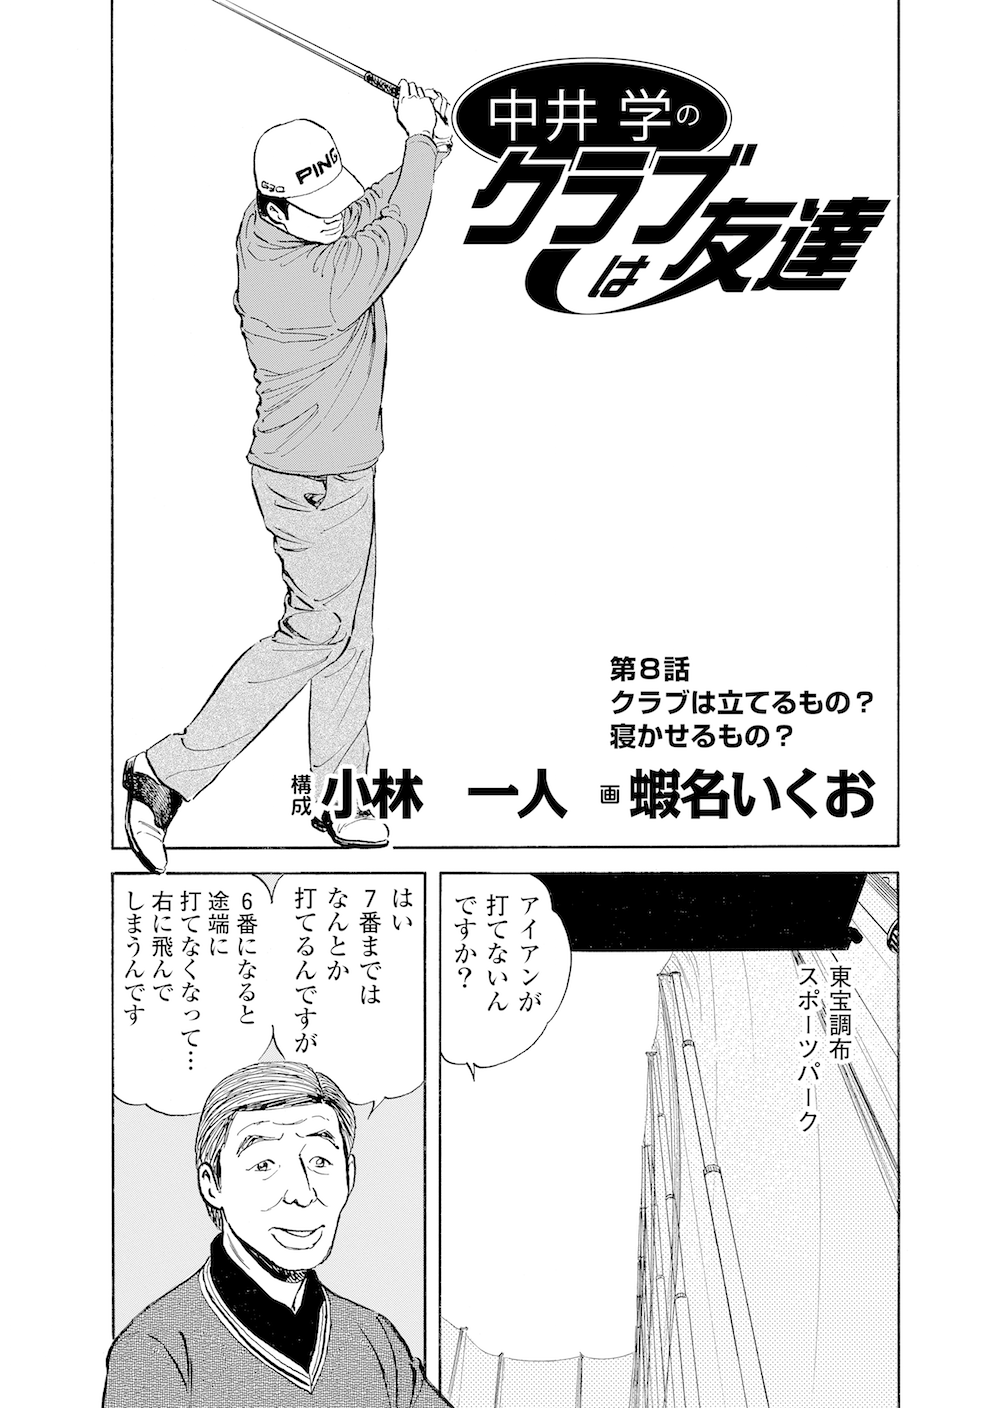 第8話 クラブは立てるもの 寝かせるもの 無料で読めるゴルフレッスンコミックweb 日本文芸社